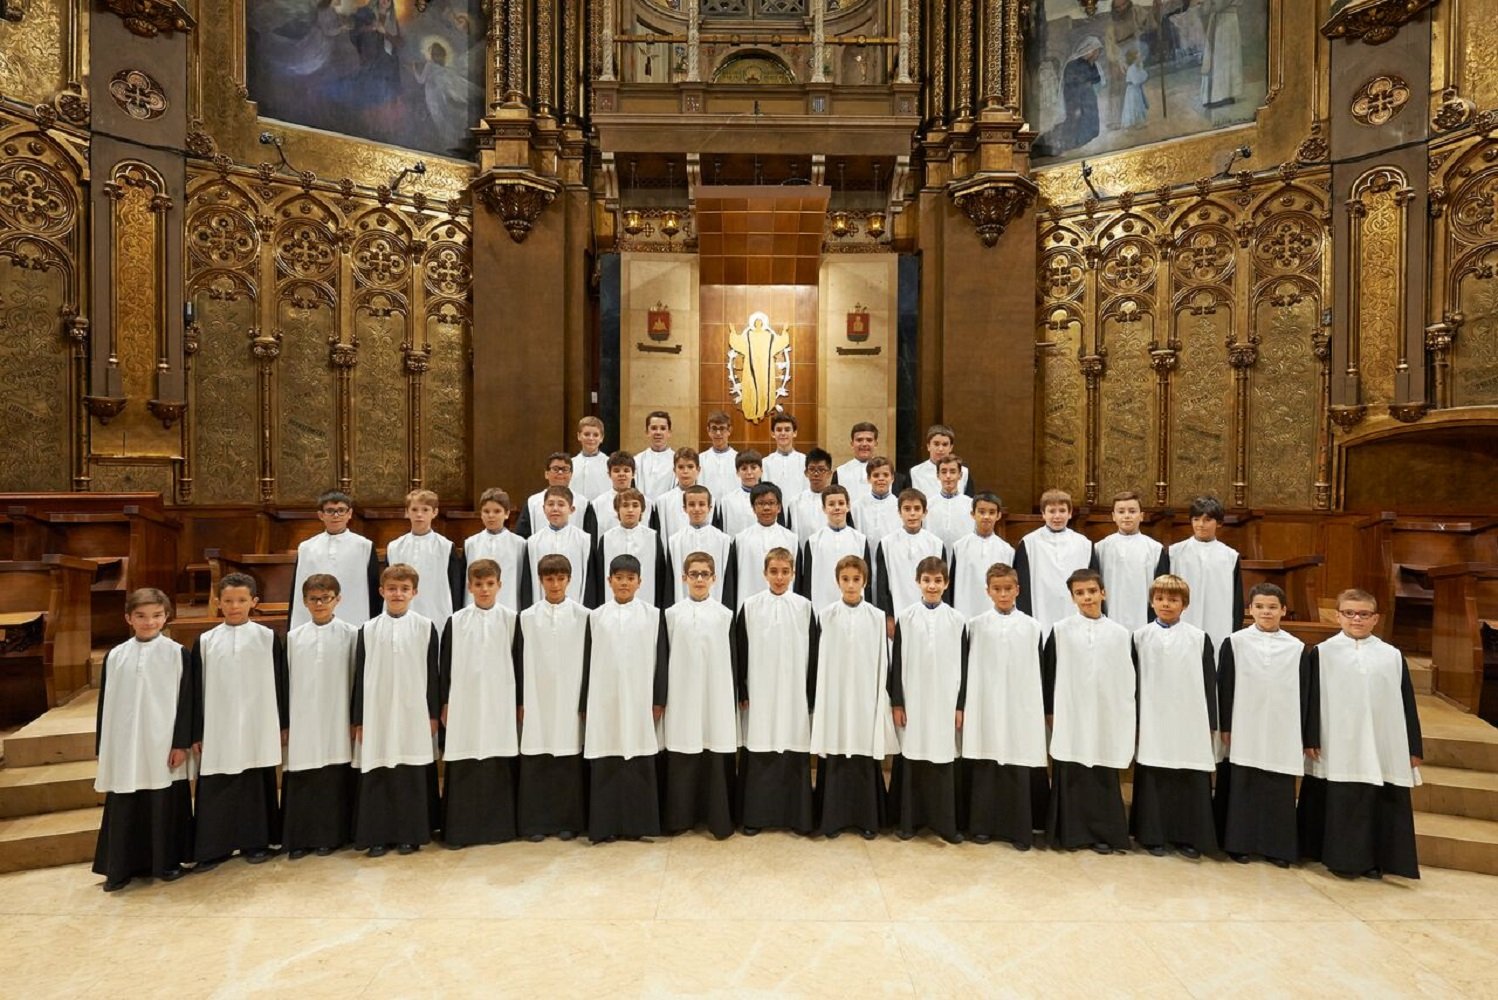 L'Escolania de Montserrat, entre els 10 millors cors del món segons la BBC